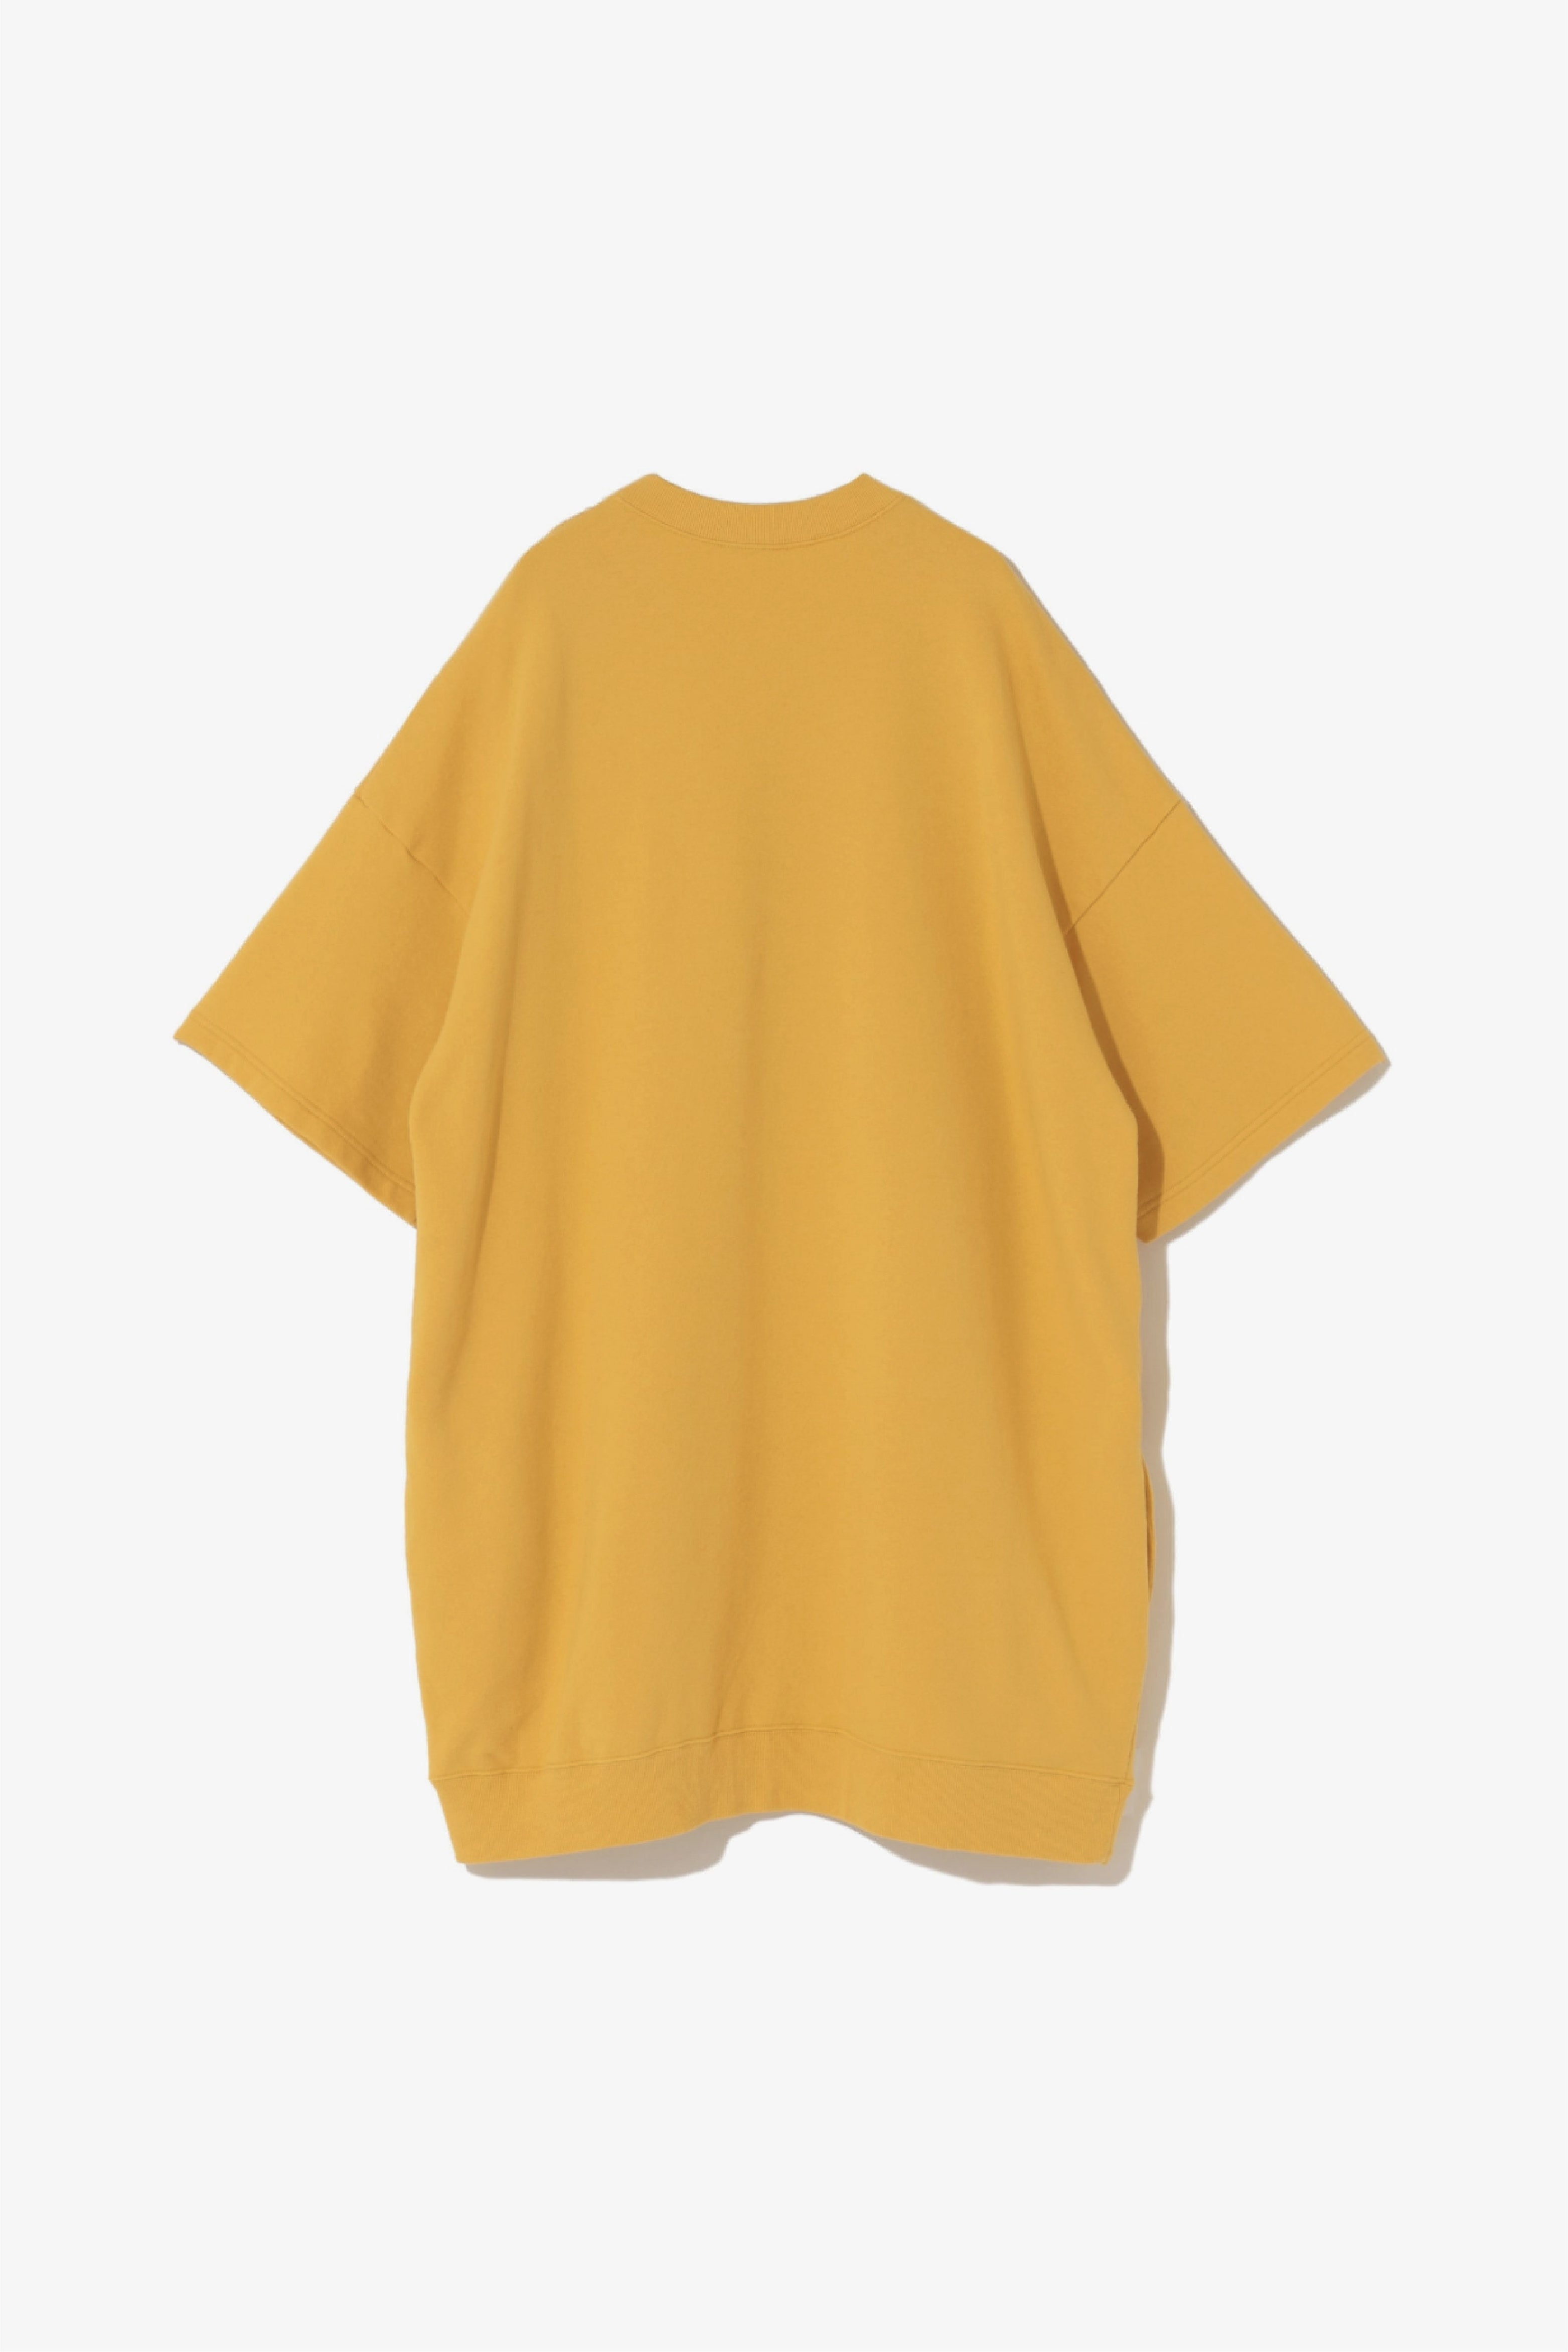 Selectshop FRAME - UNDERCOVERISM Undercoverism T-Shirt T-Shirt Dubai